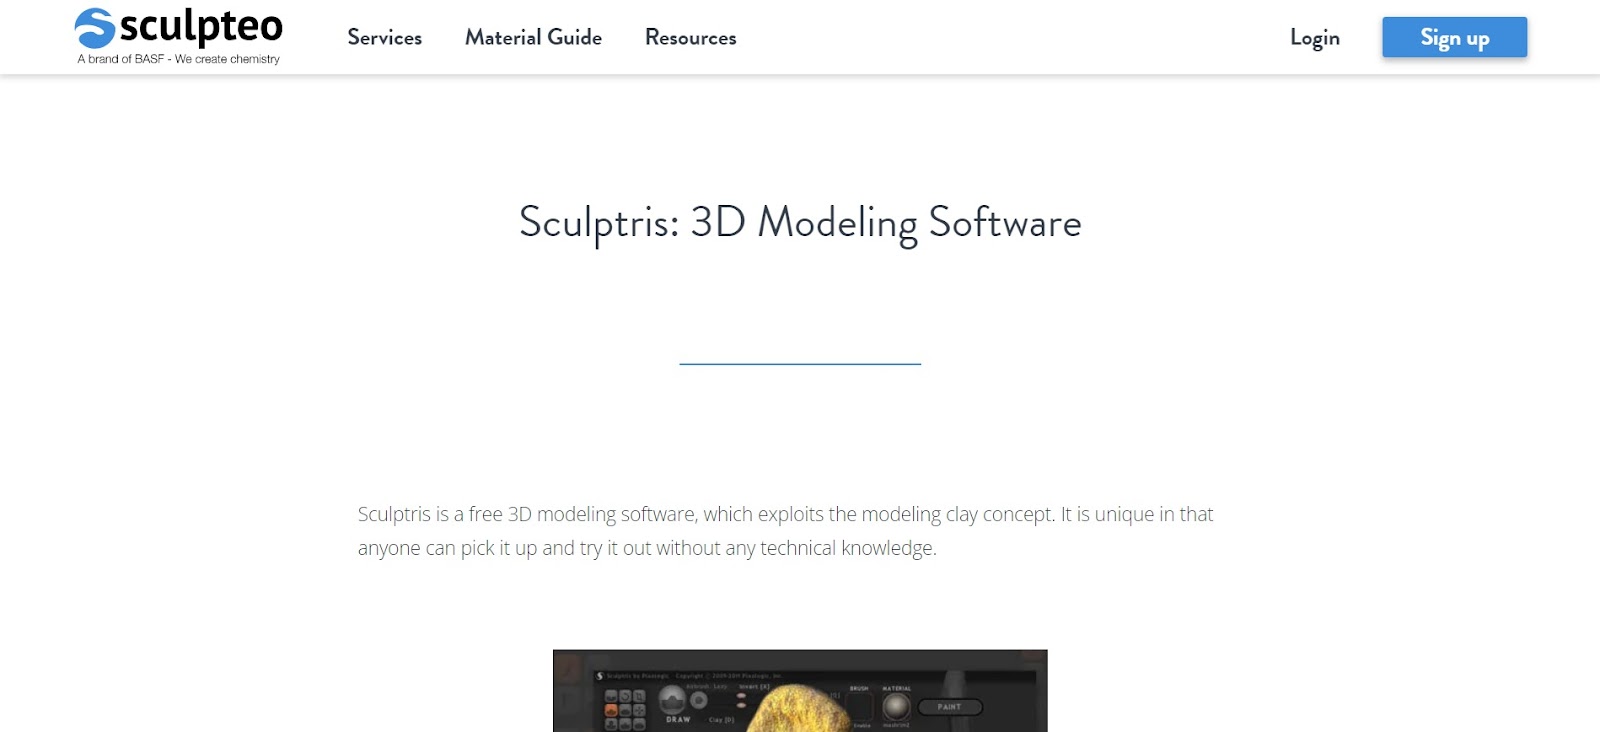 A screenshot of Sculpteo's website